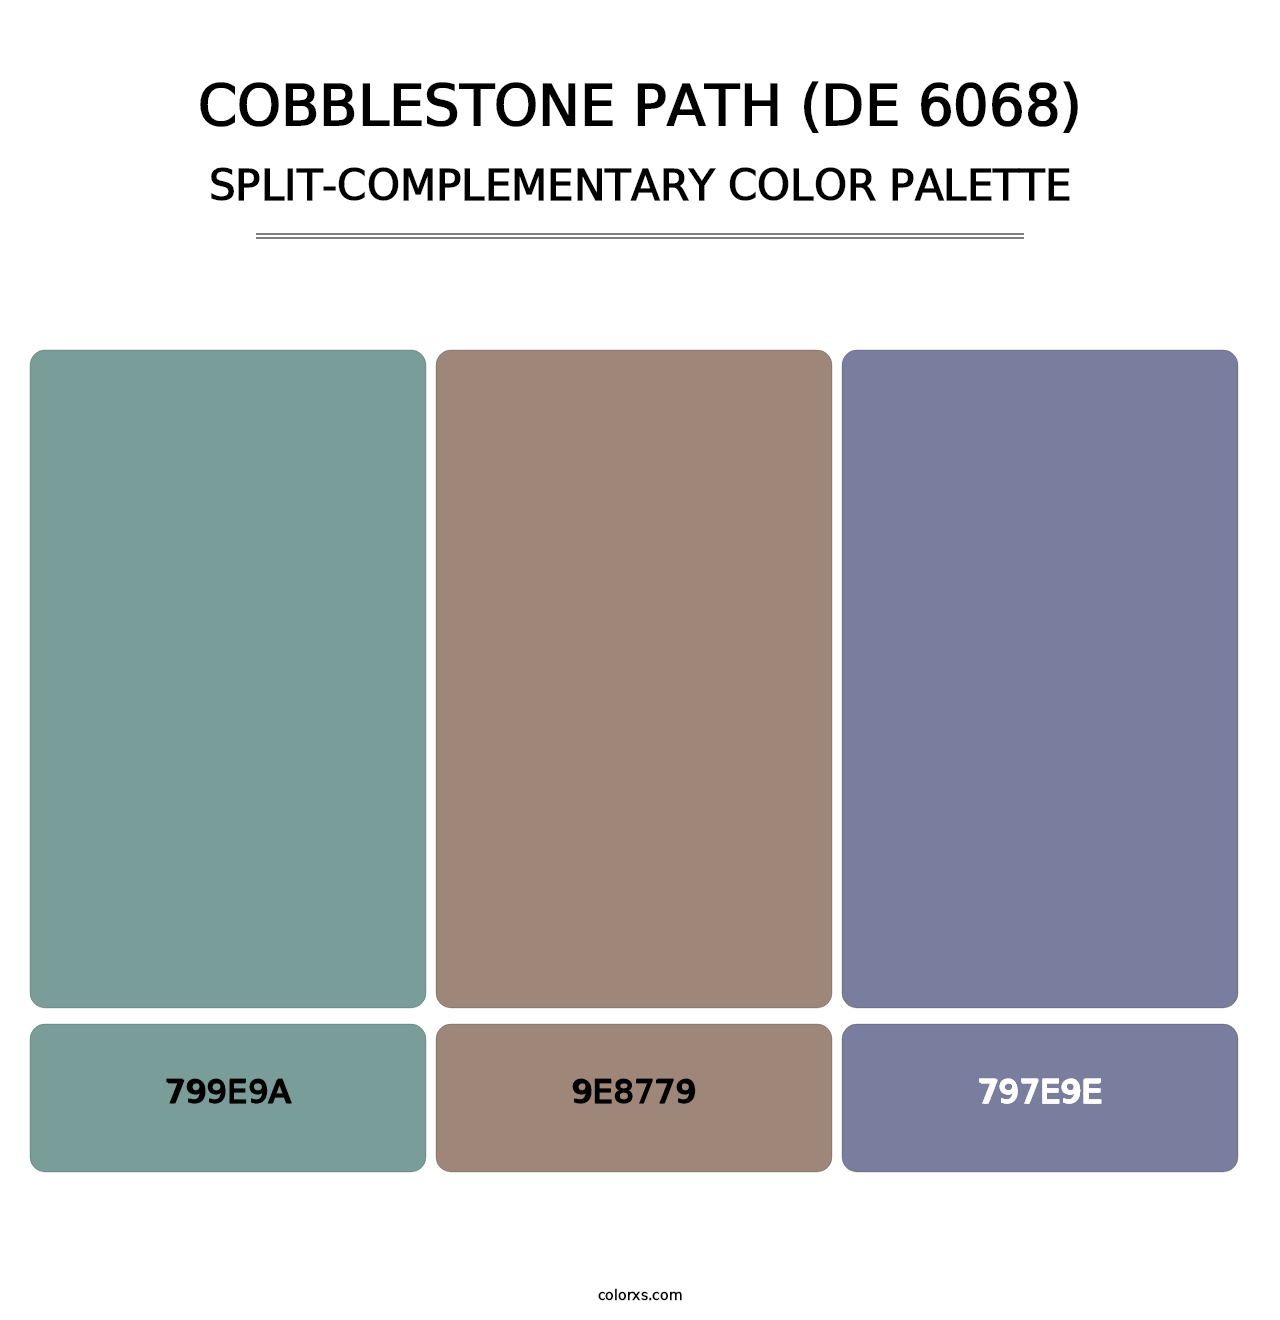 Cobblestone Path (DE 6068) - Split-Complementary Color Palette